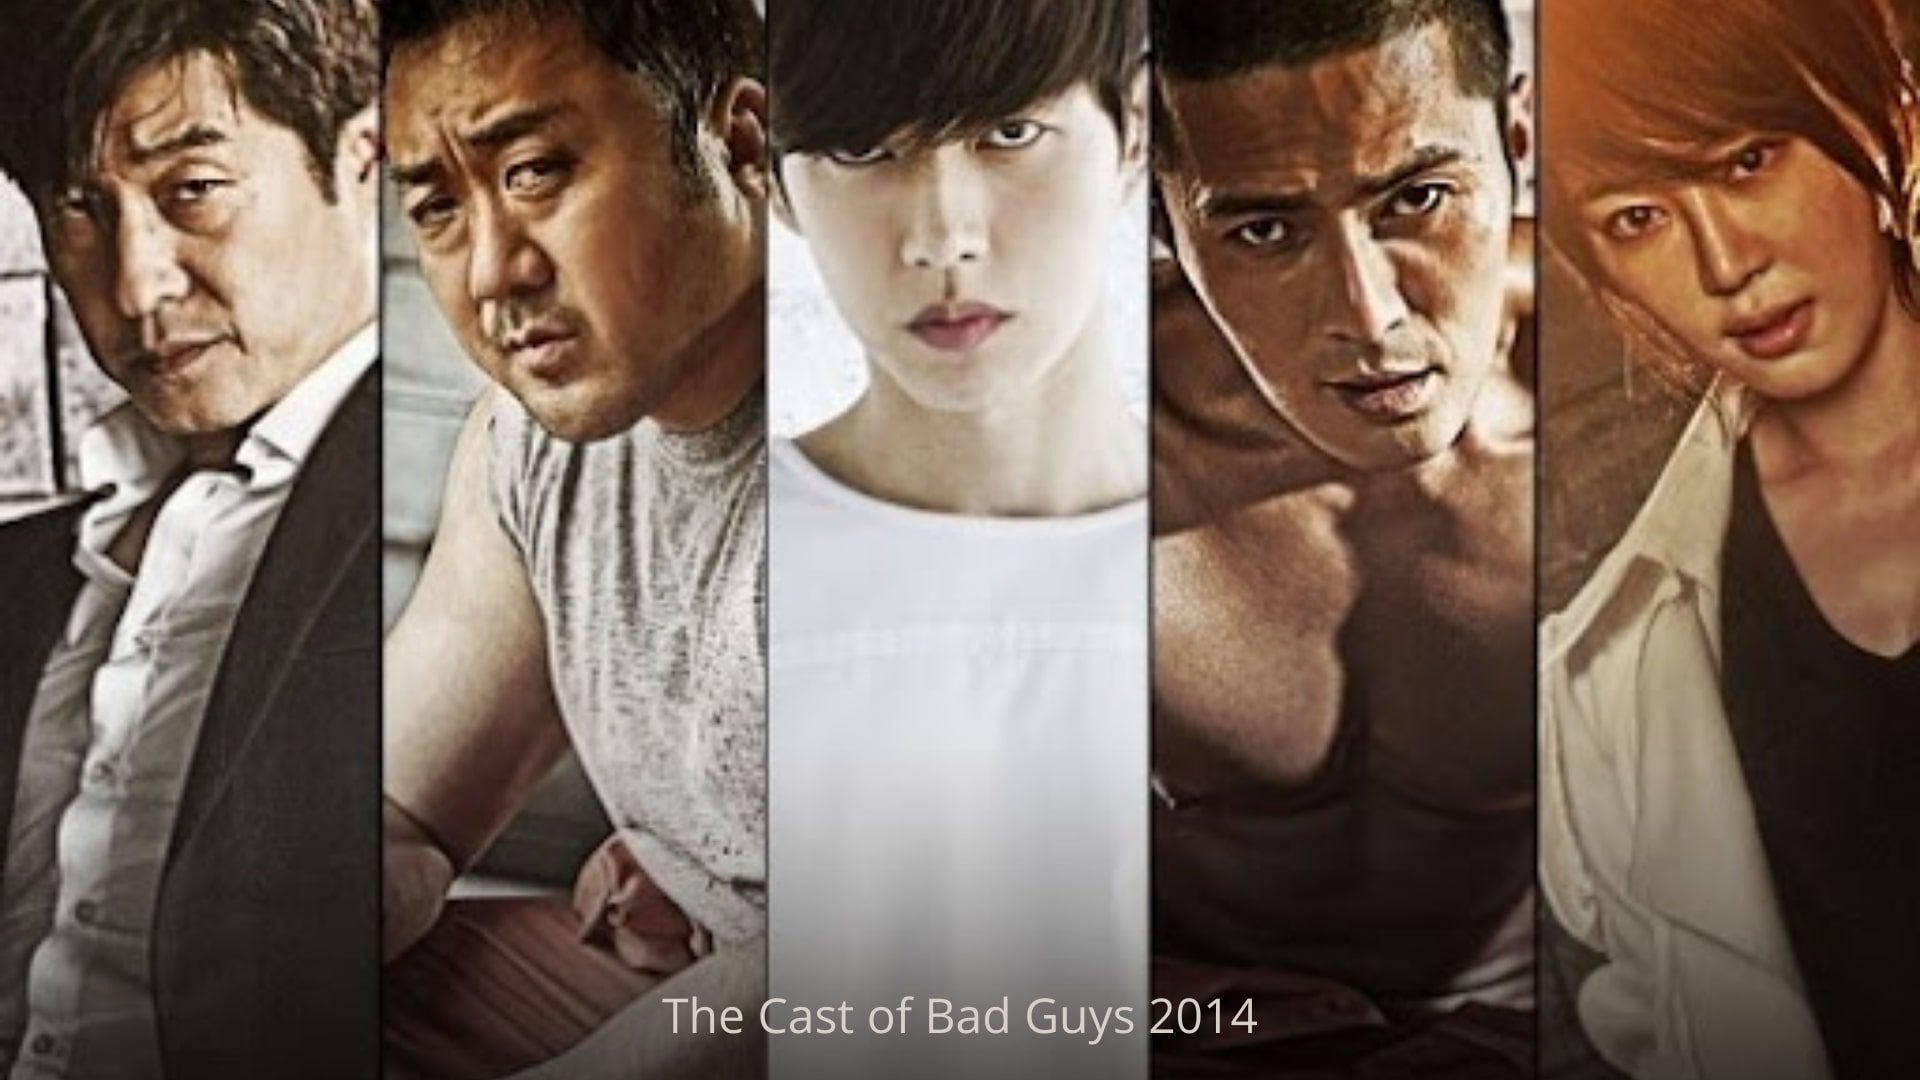 How To Watch OCN’s Bad Guys 2014 Korean Drama